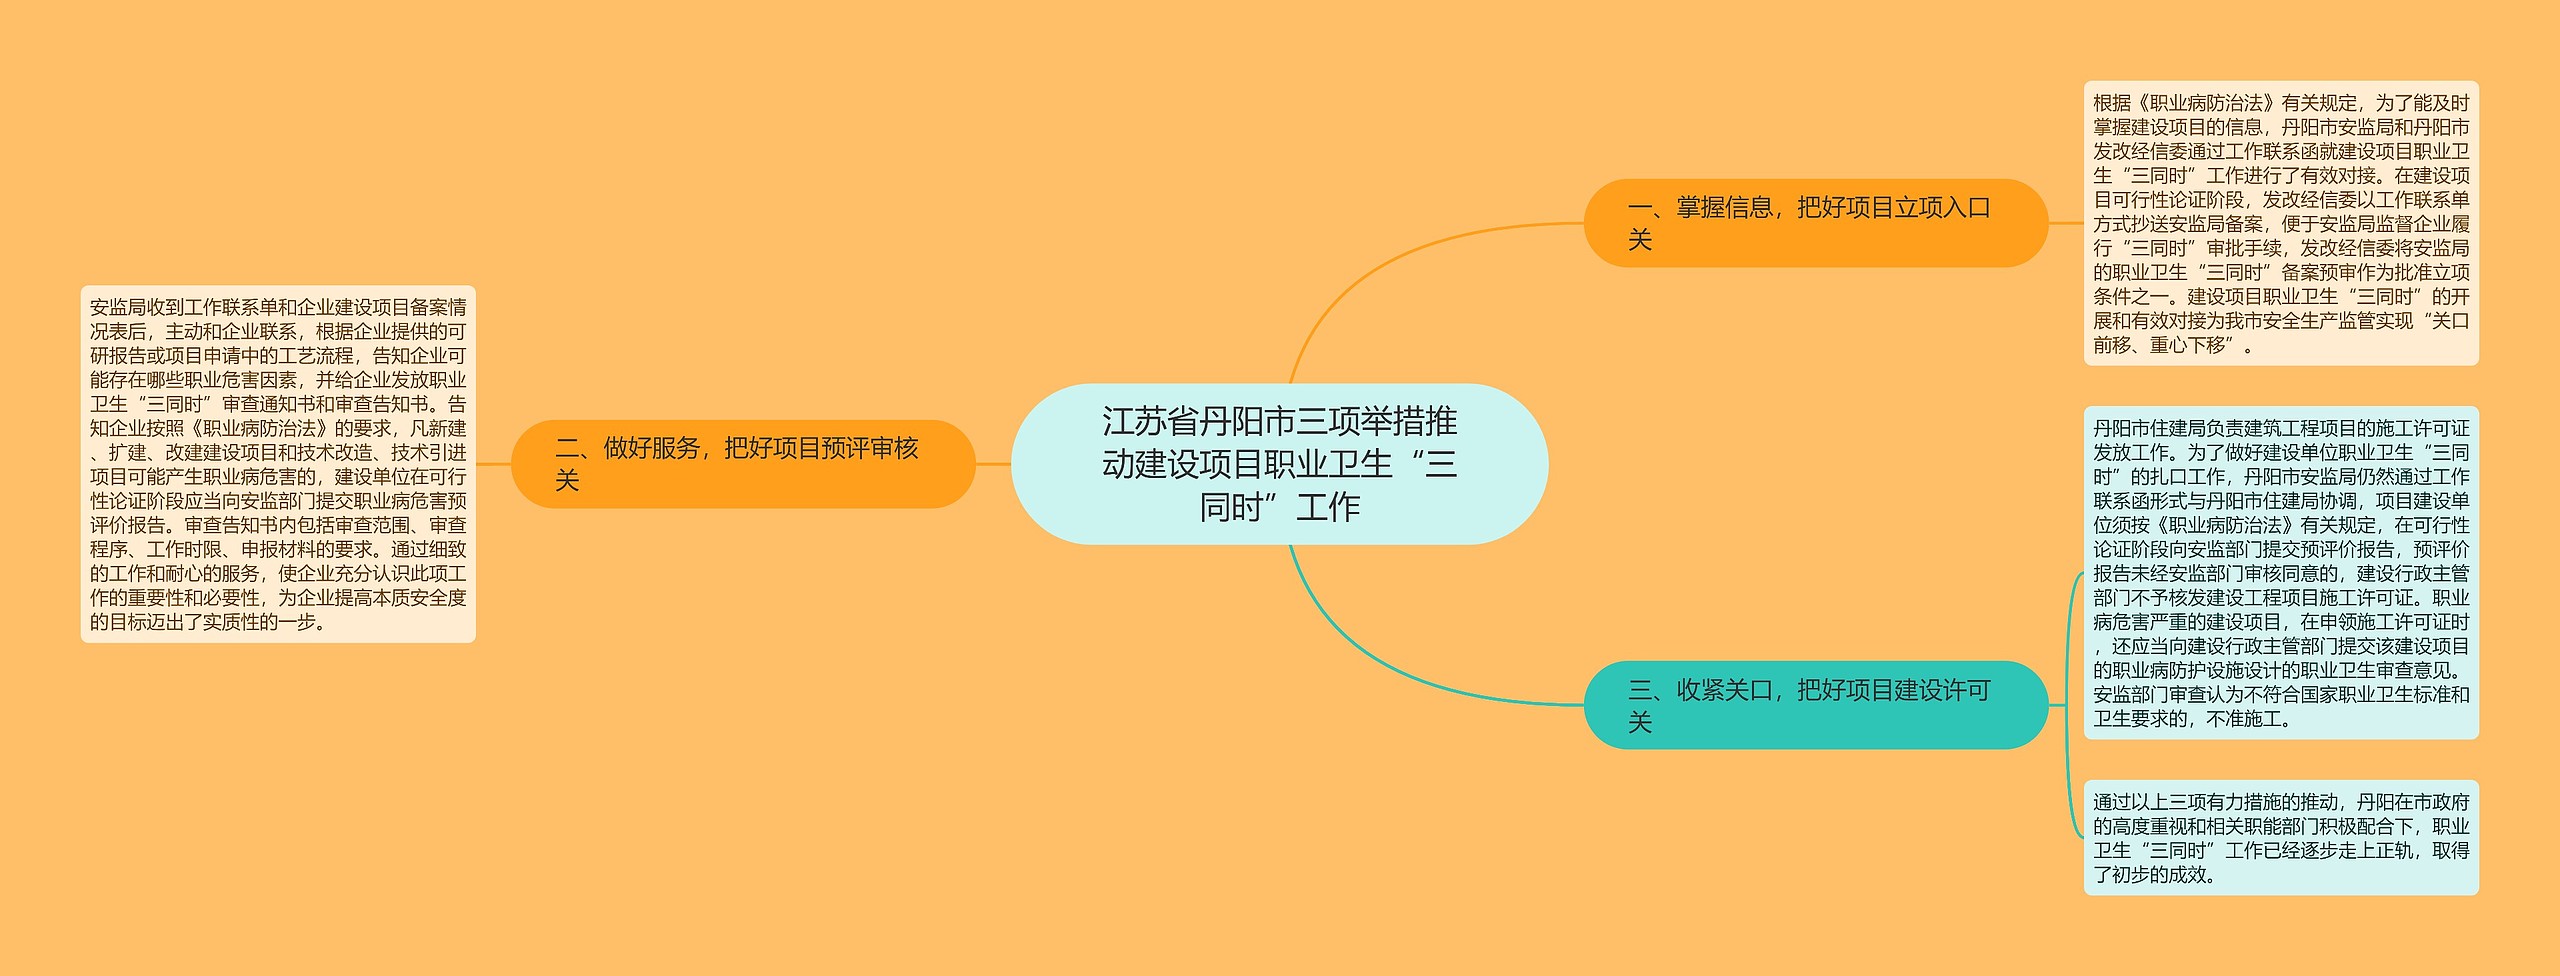 江苏省丹阳市三项举措推动建设项目职业卫生“三同时”工作